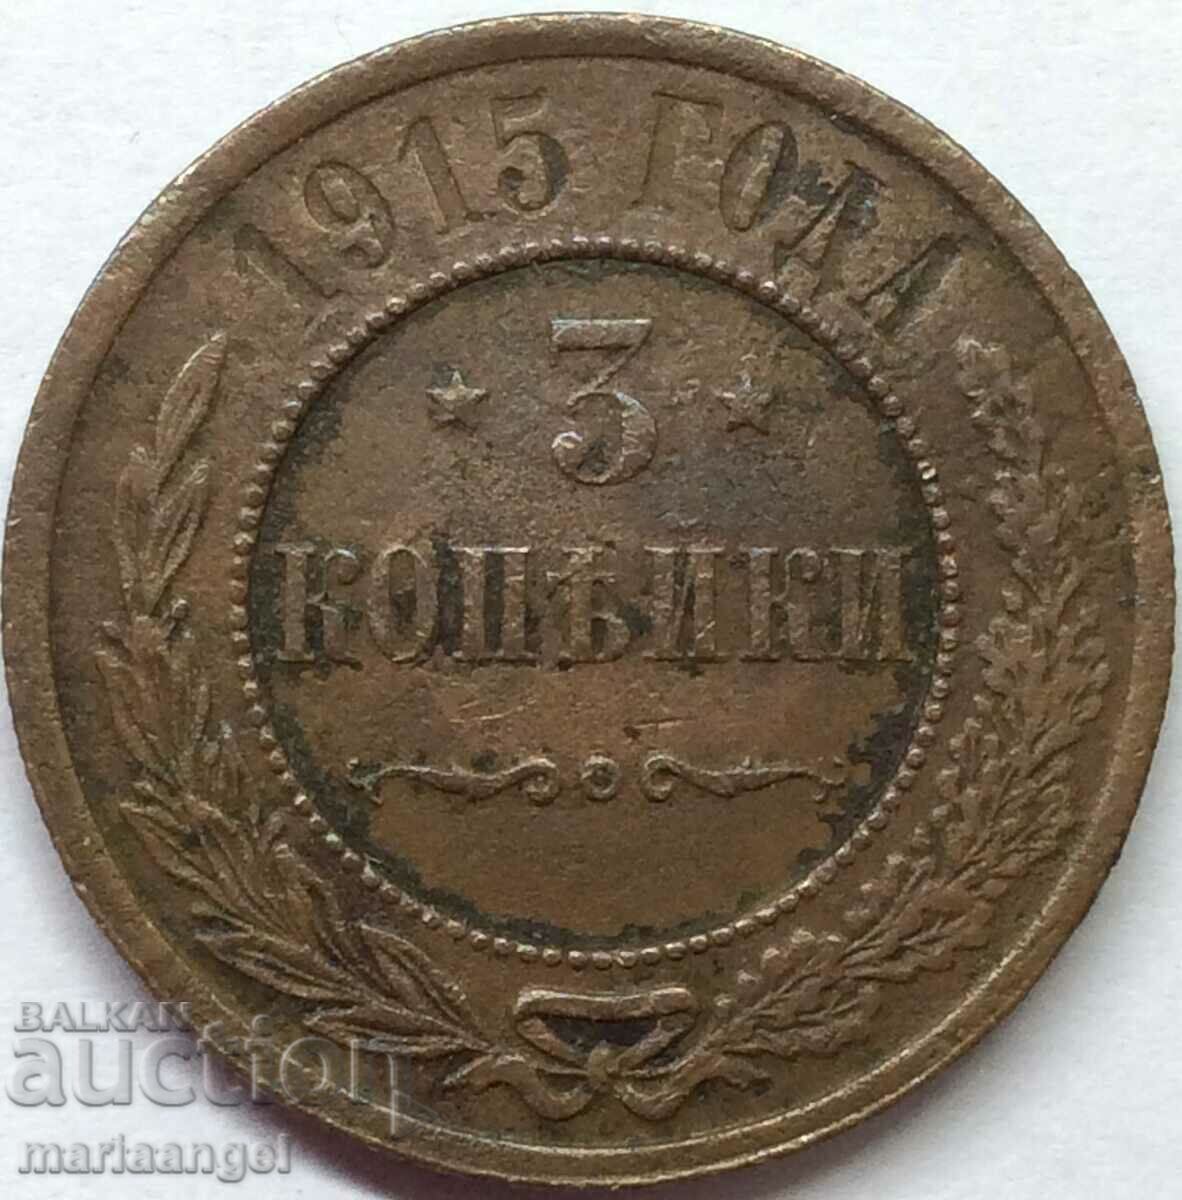 3 kopecks 1915 Russia 28mm copper